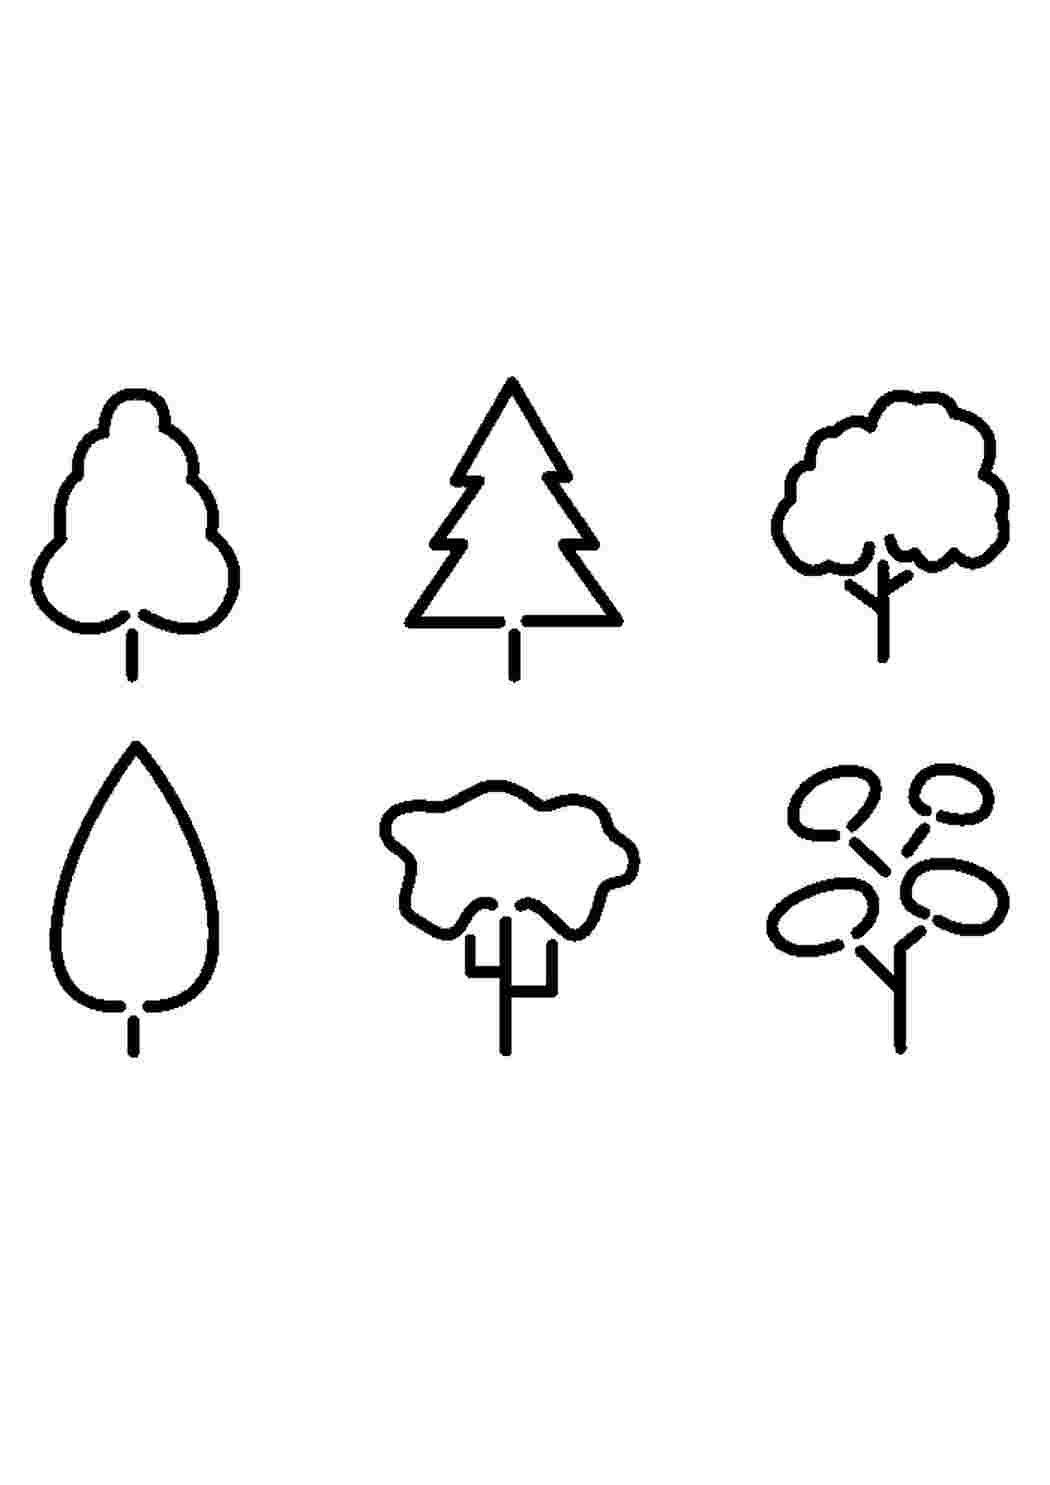 Раскраски Контуры шаблоны деревьев для вырезания скачать бесплатно онлайн и распечатать трафареты деревьев